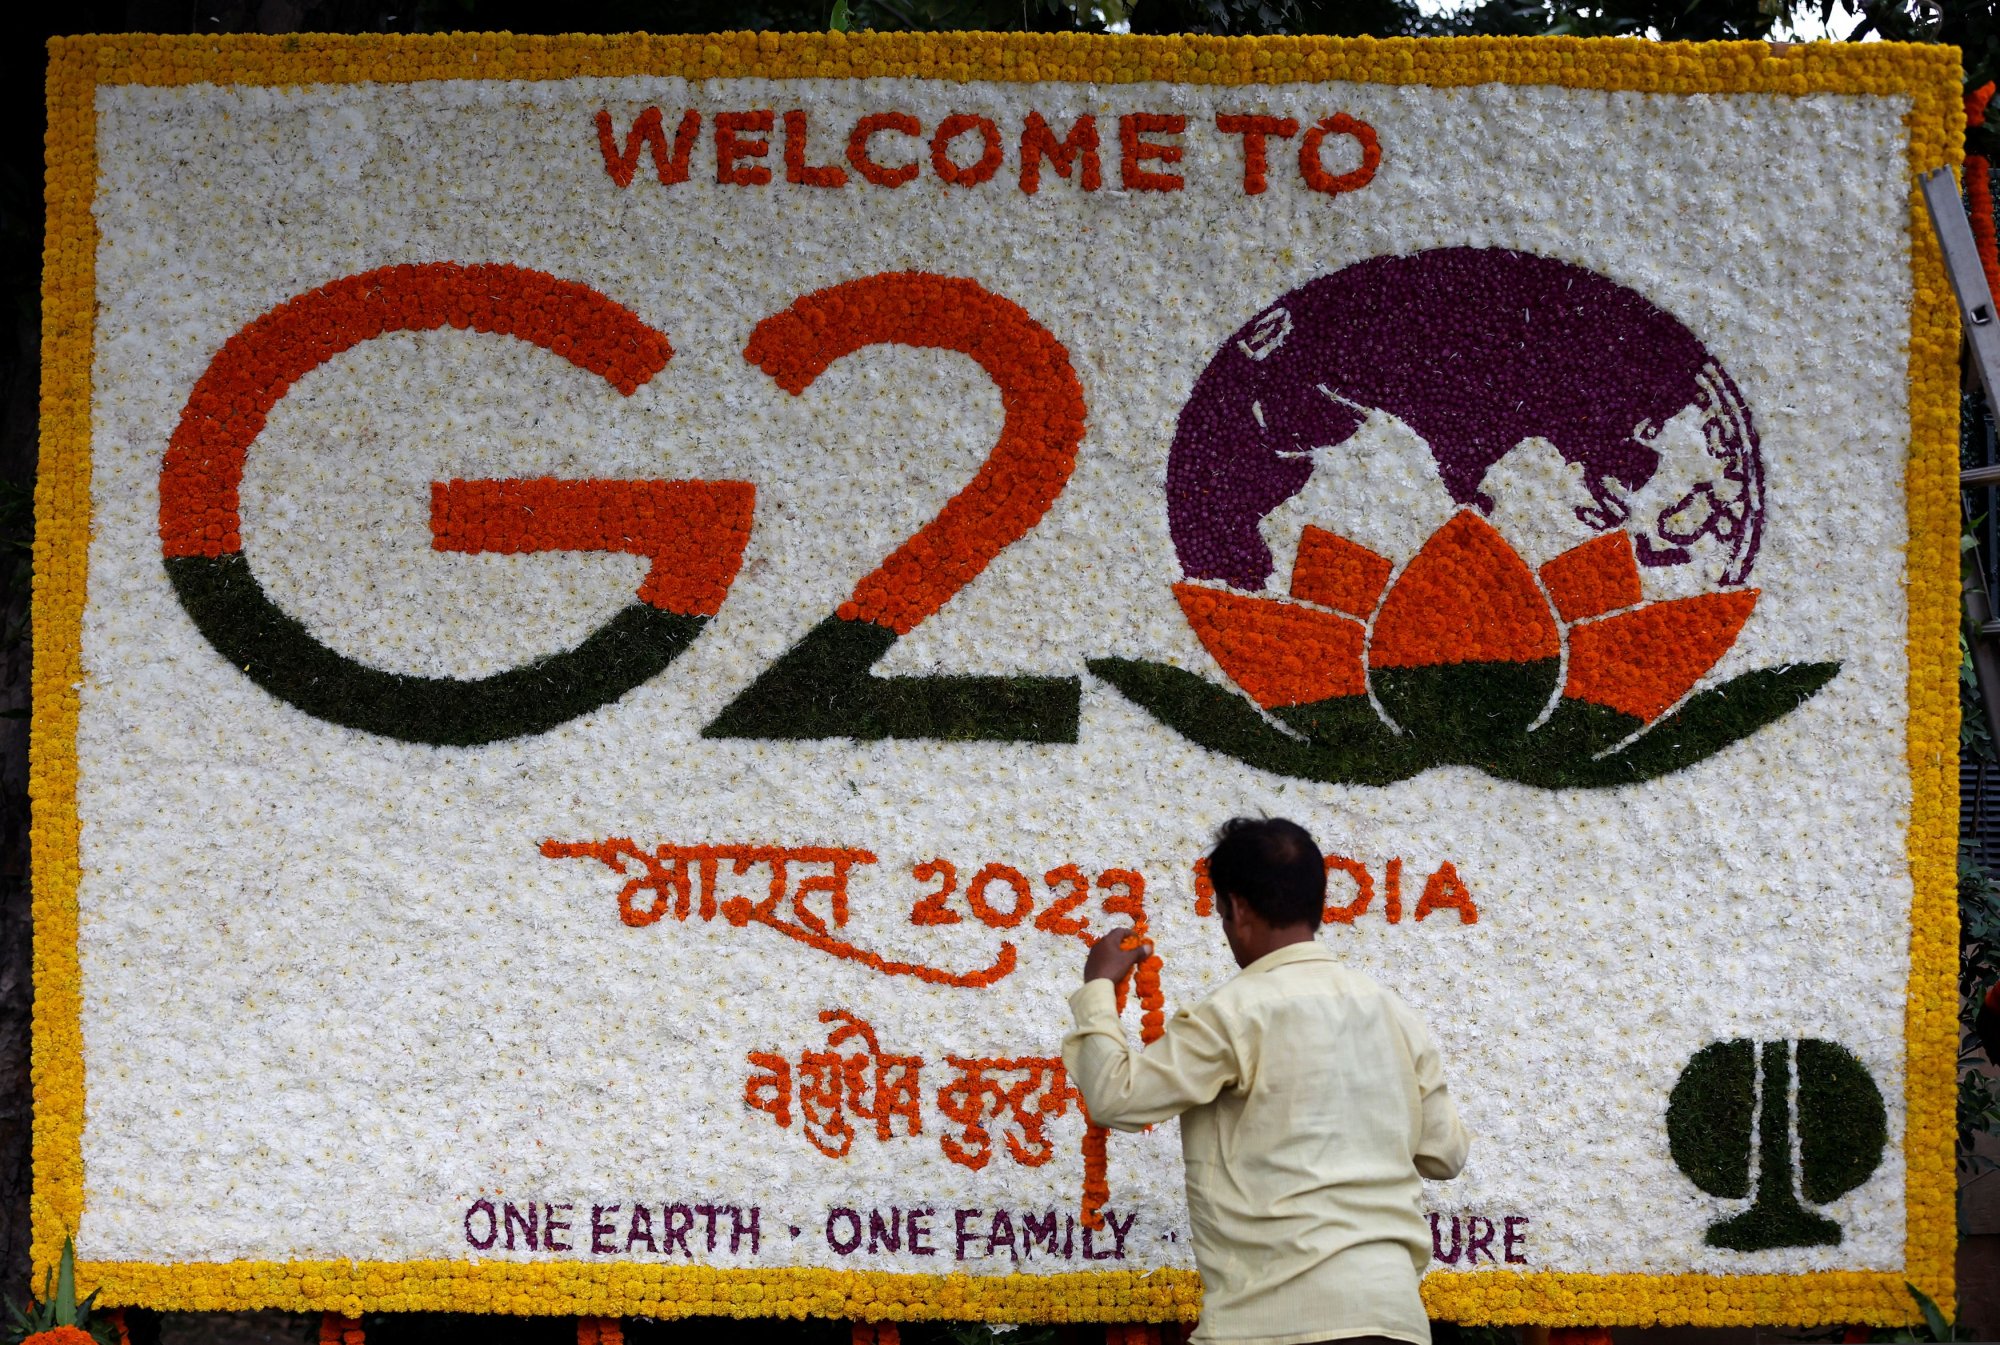 G20: Η σκοτεινή πλευρά της Συνόδου - Η άλλη όψη, από την Αρουντάτι Ρόι